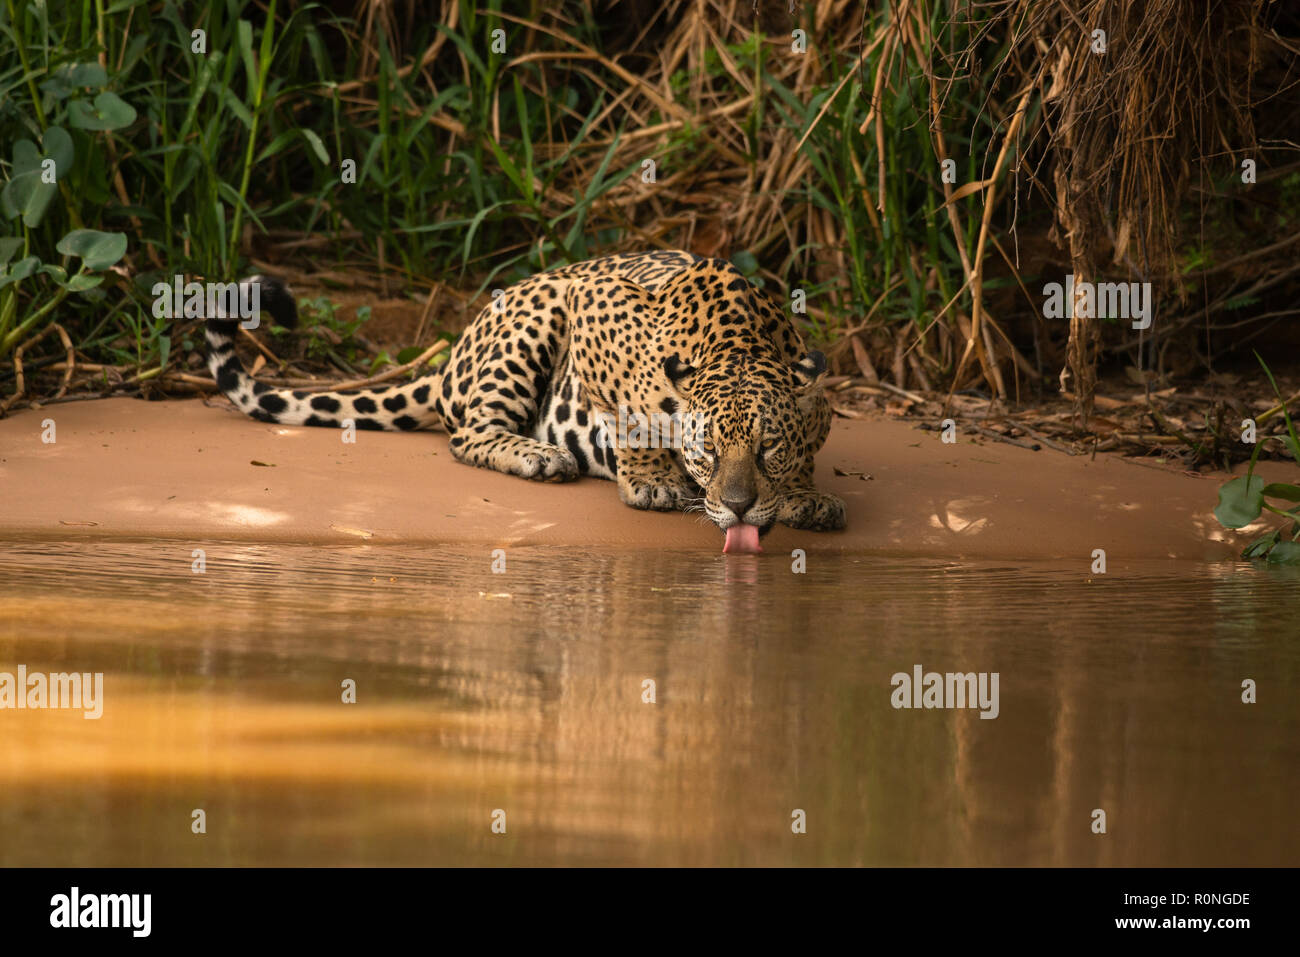 A Jaguar (Panthera onca) from North Pantanal Stock Photo